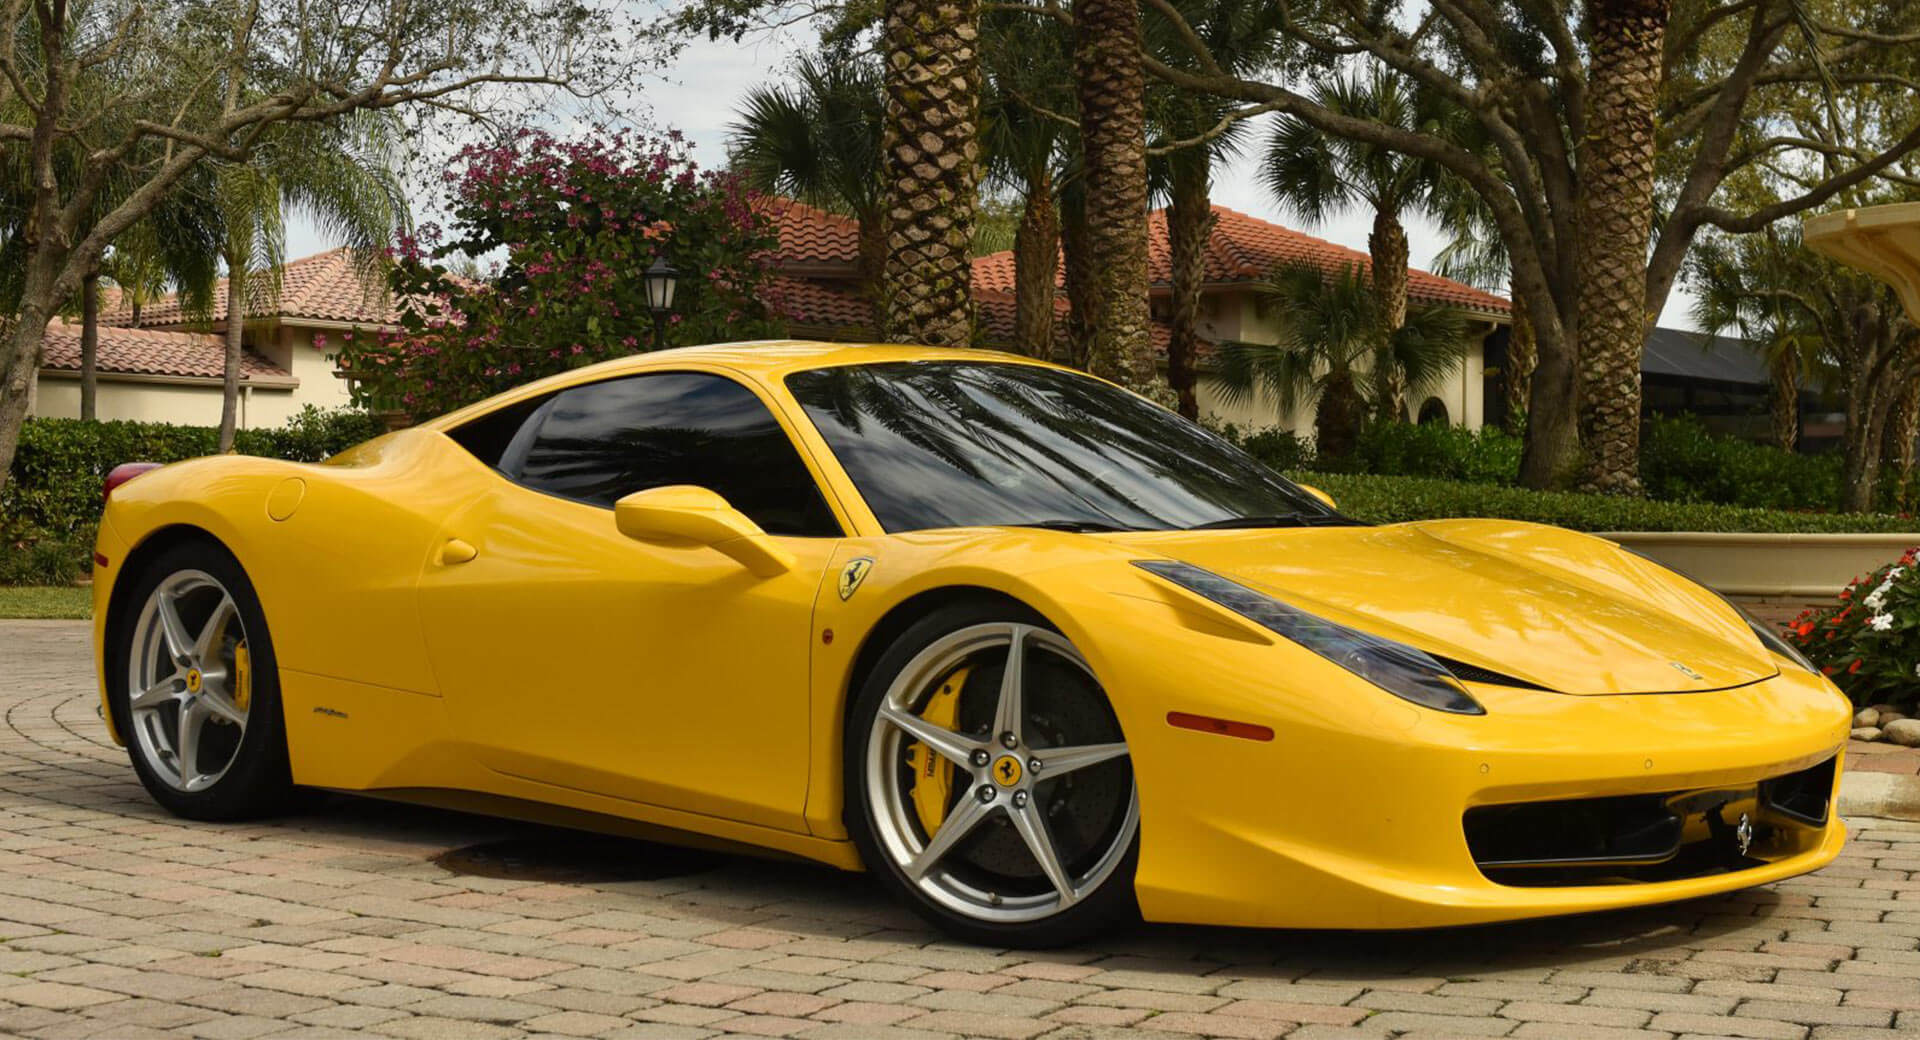 Véhicule illustrant l'un des types de véhicule dont le transfert est possible, ici un véhicule de luxe, une Ferrari